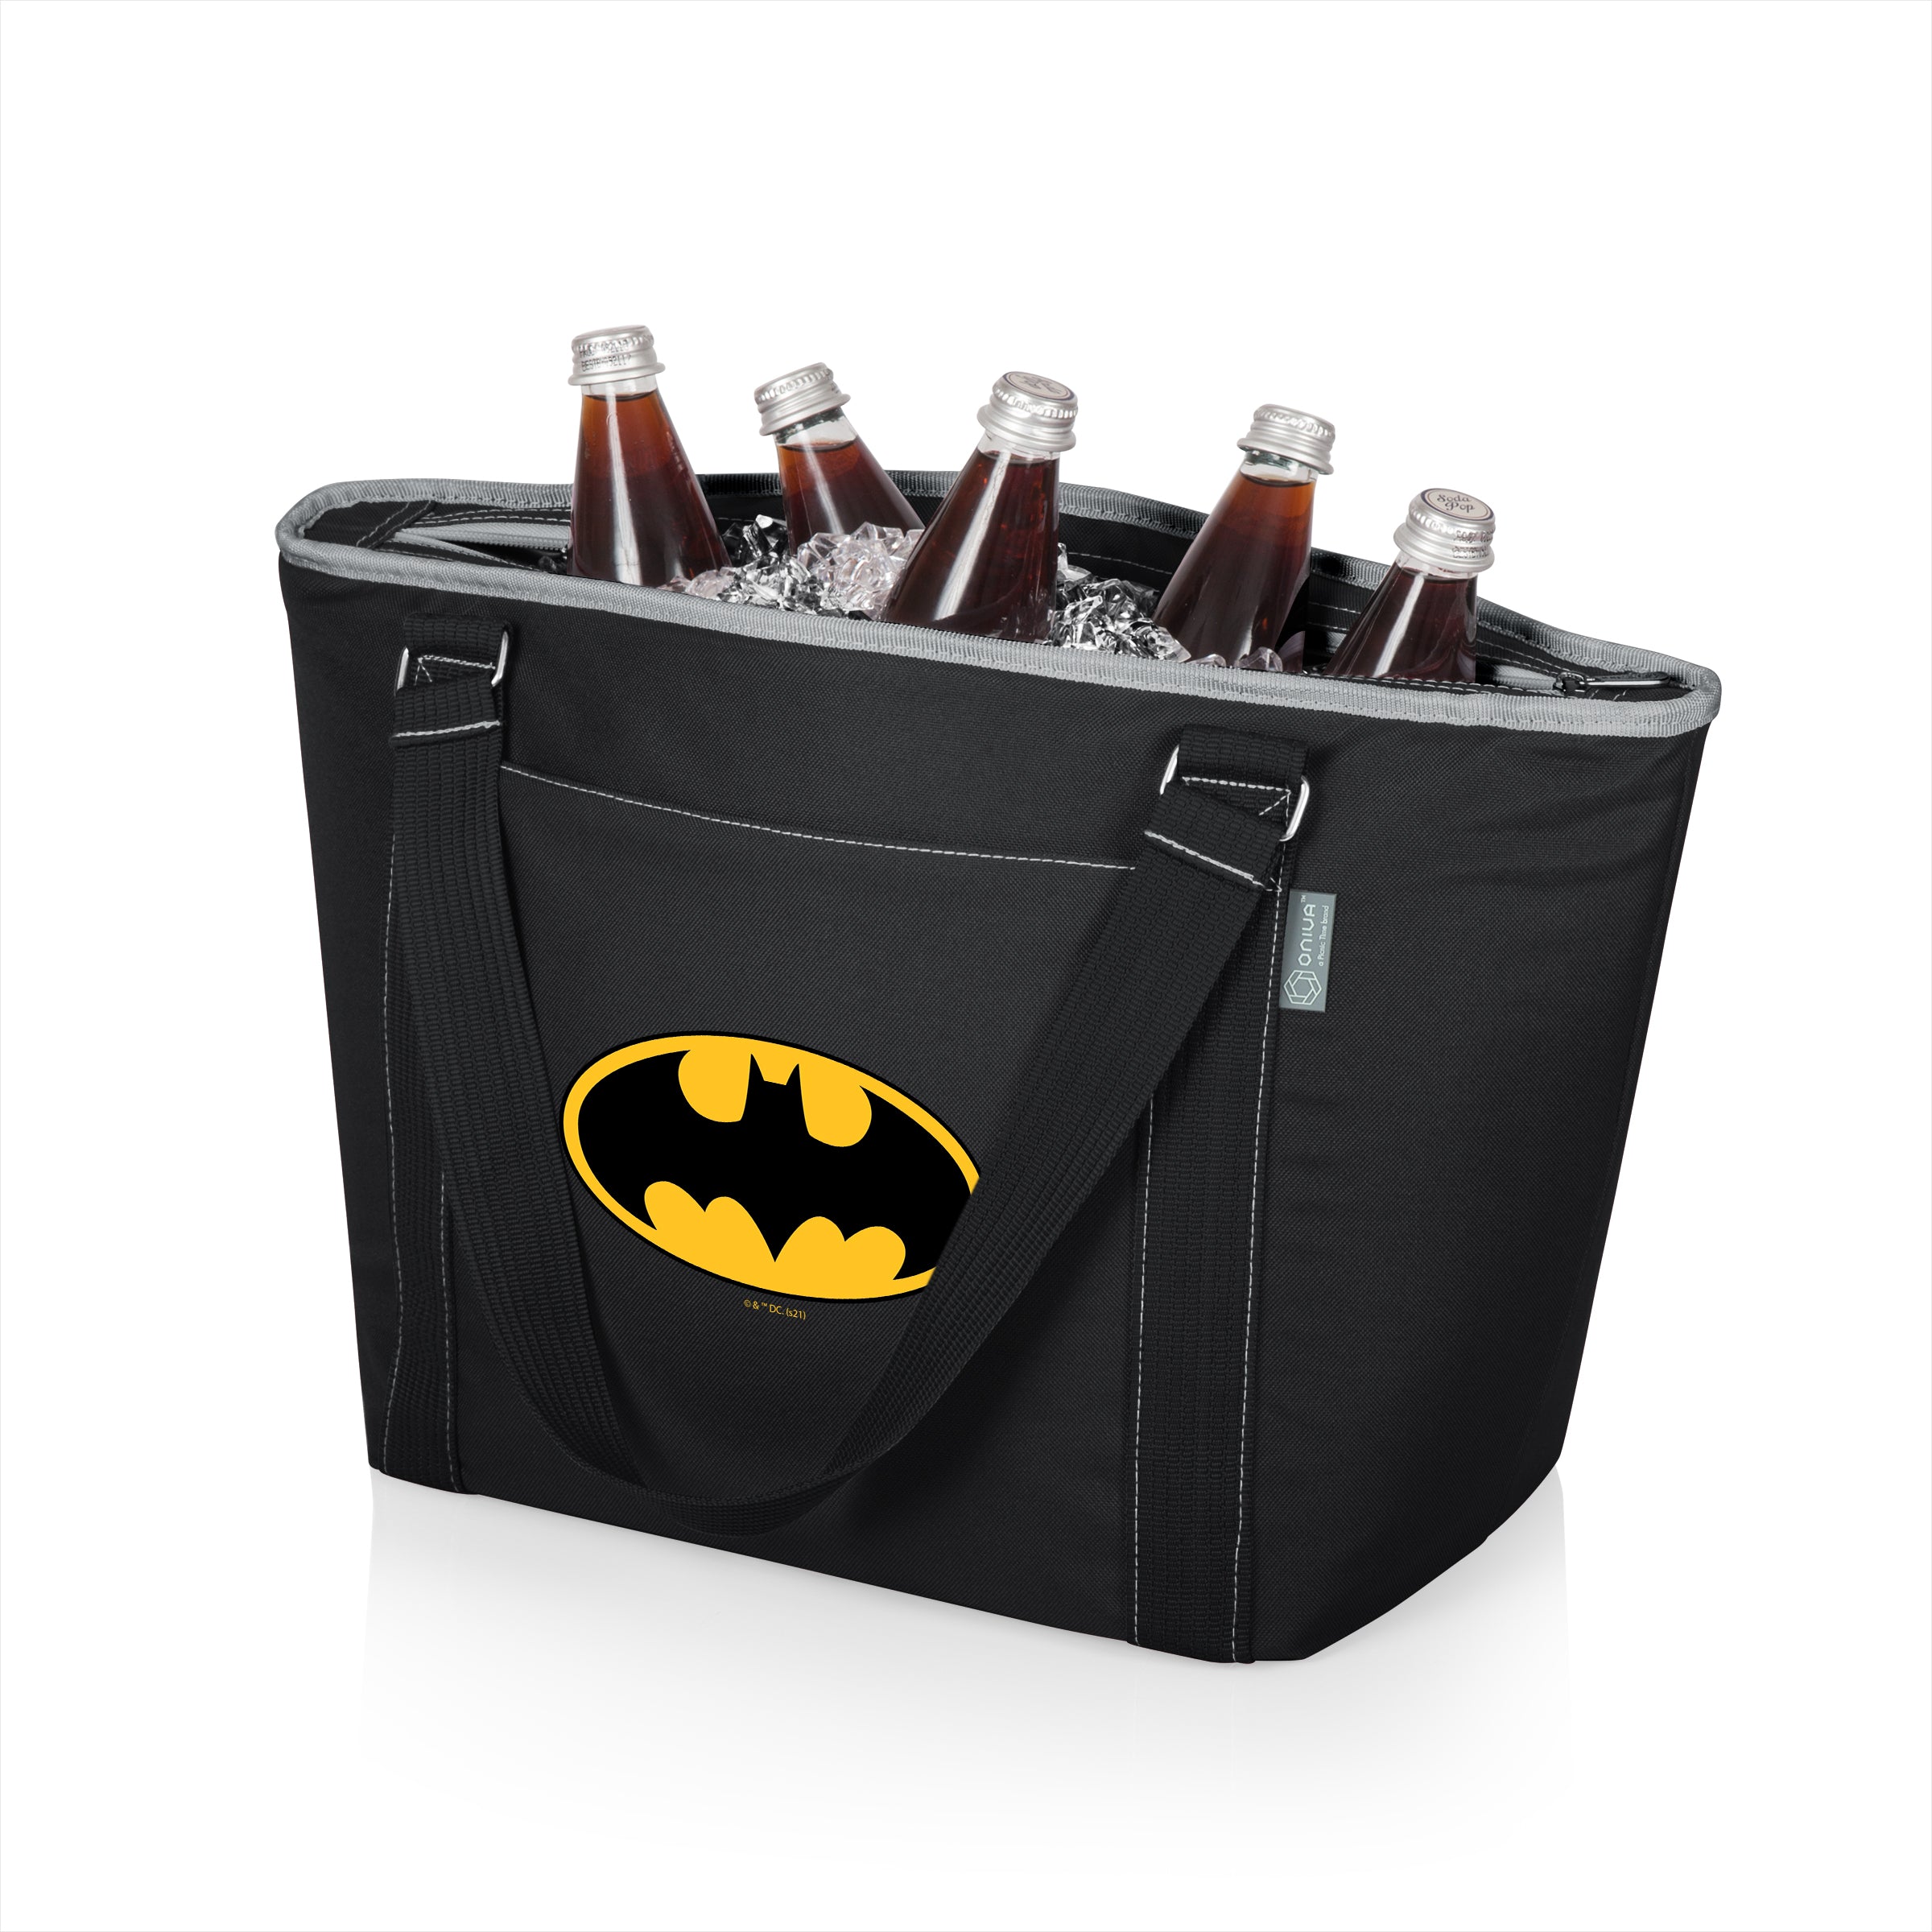 Batman - Topanga Cooler Tote Bag